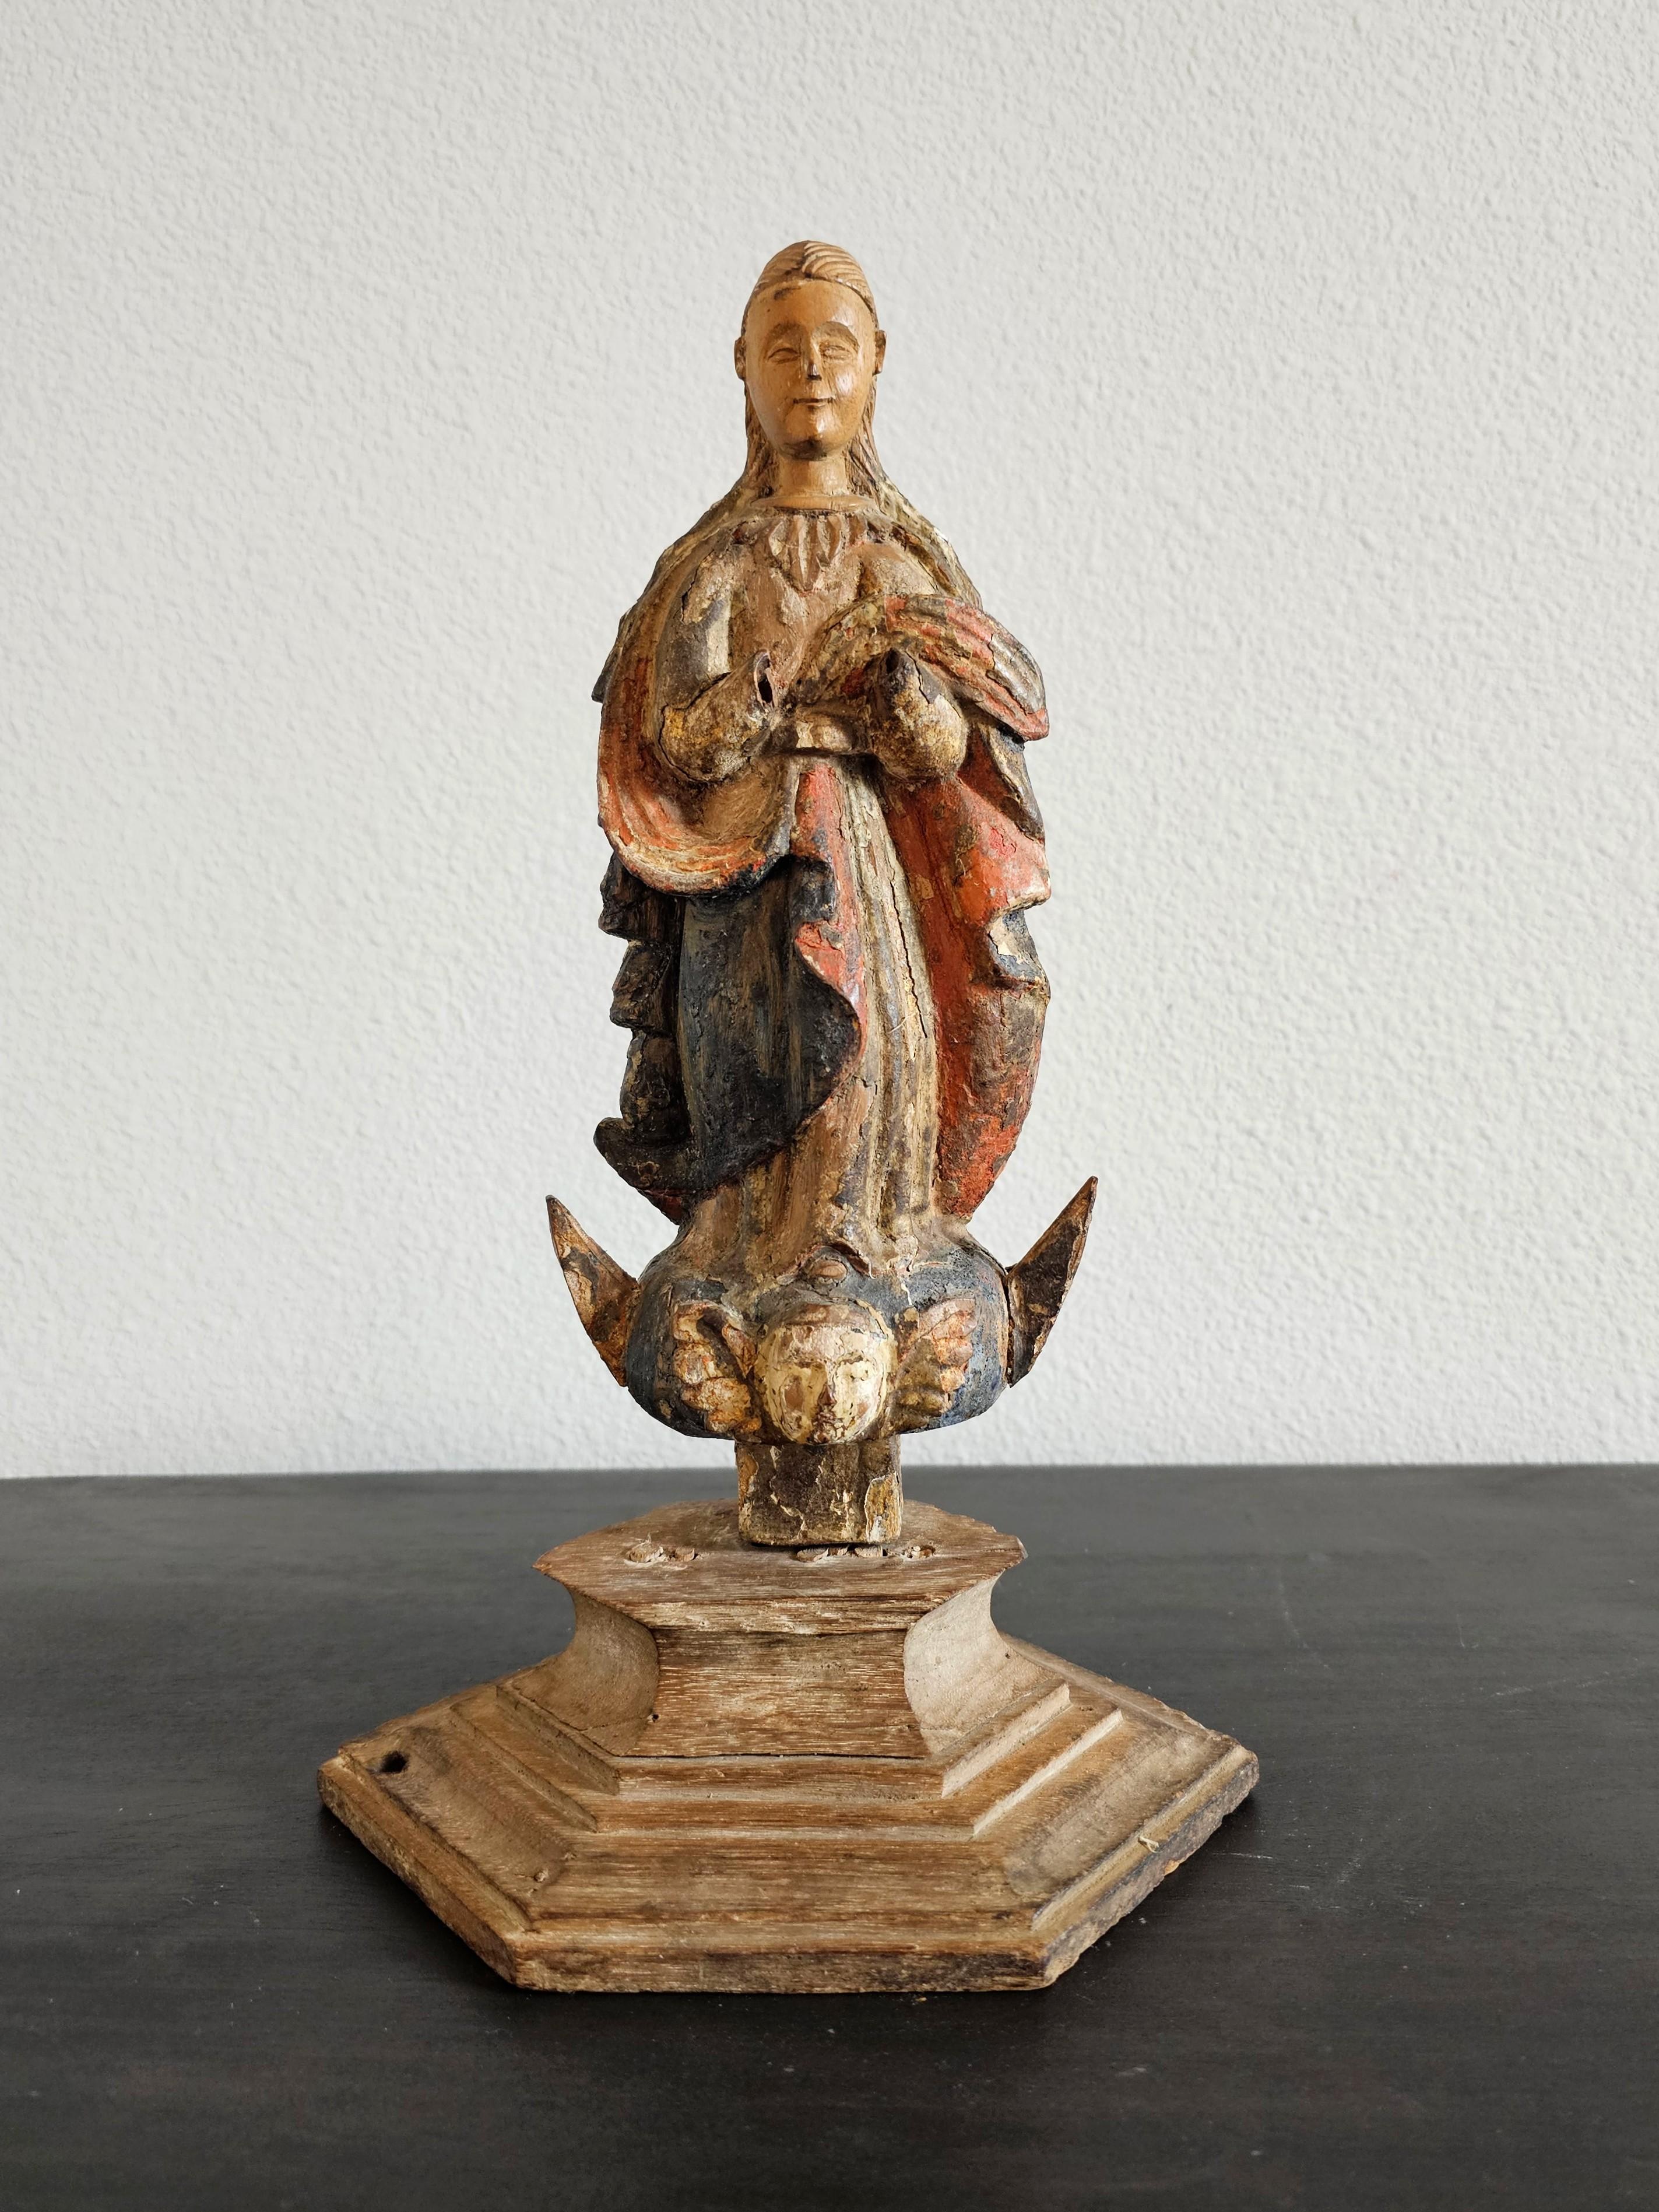 Rare figurine d'autel en bois antique, sculptée et peinte à la main, de la période baroque européenne, 17e/18e siècle, la sculpture d'art populaire religieux représentant la Madone de l'Immaculée Conception, avec une patine fortement dégradée sur